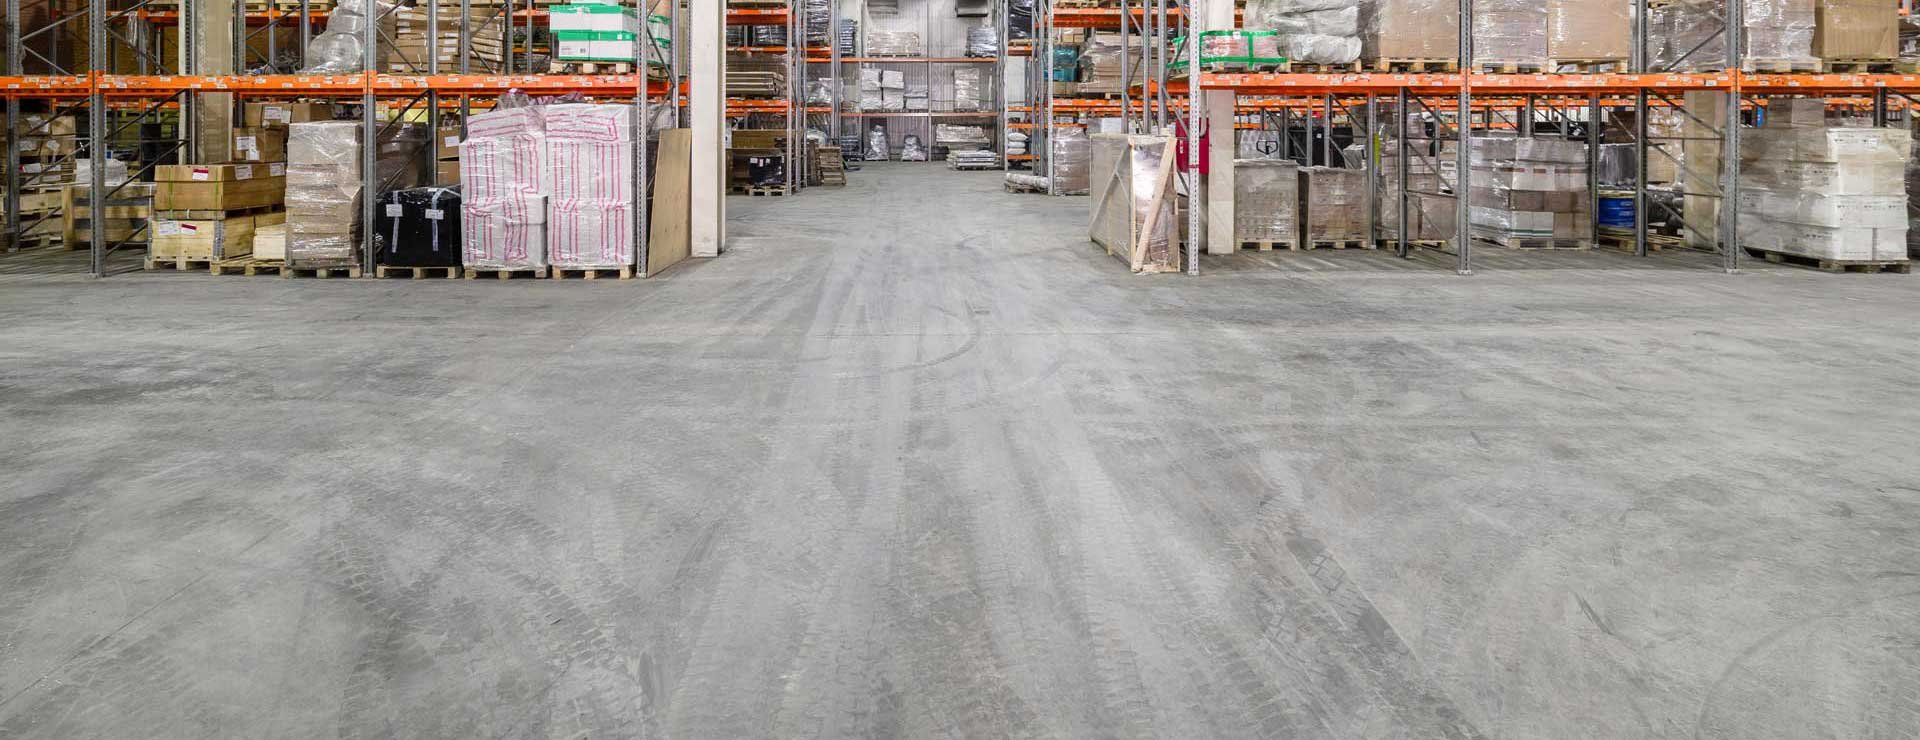 concrete_floor_in_warehouse